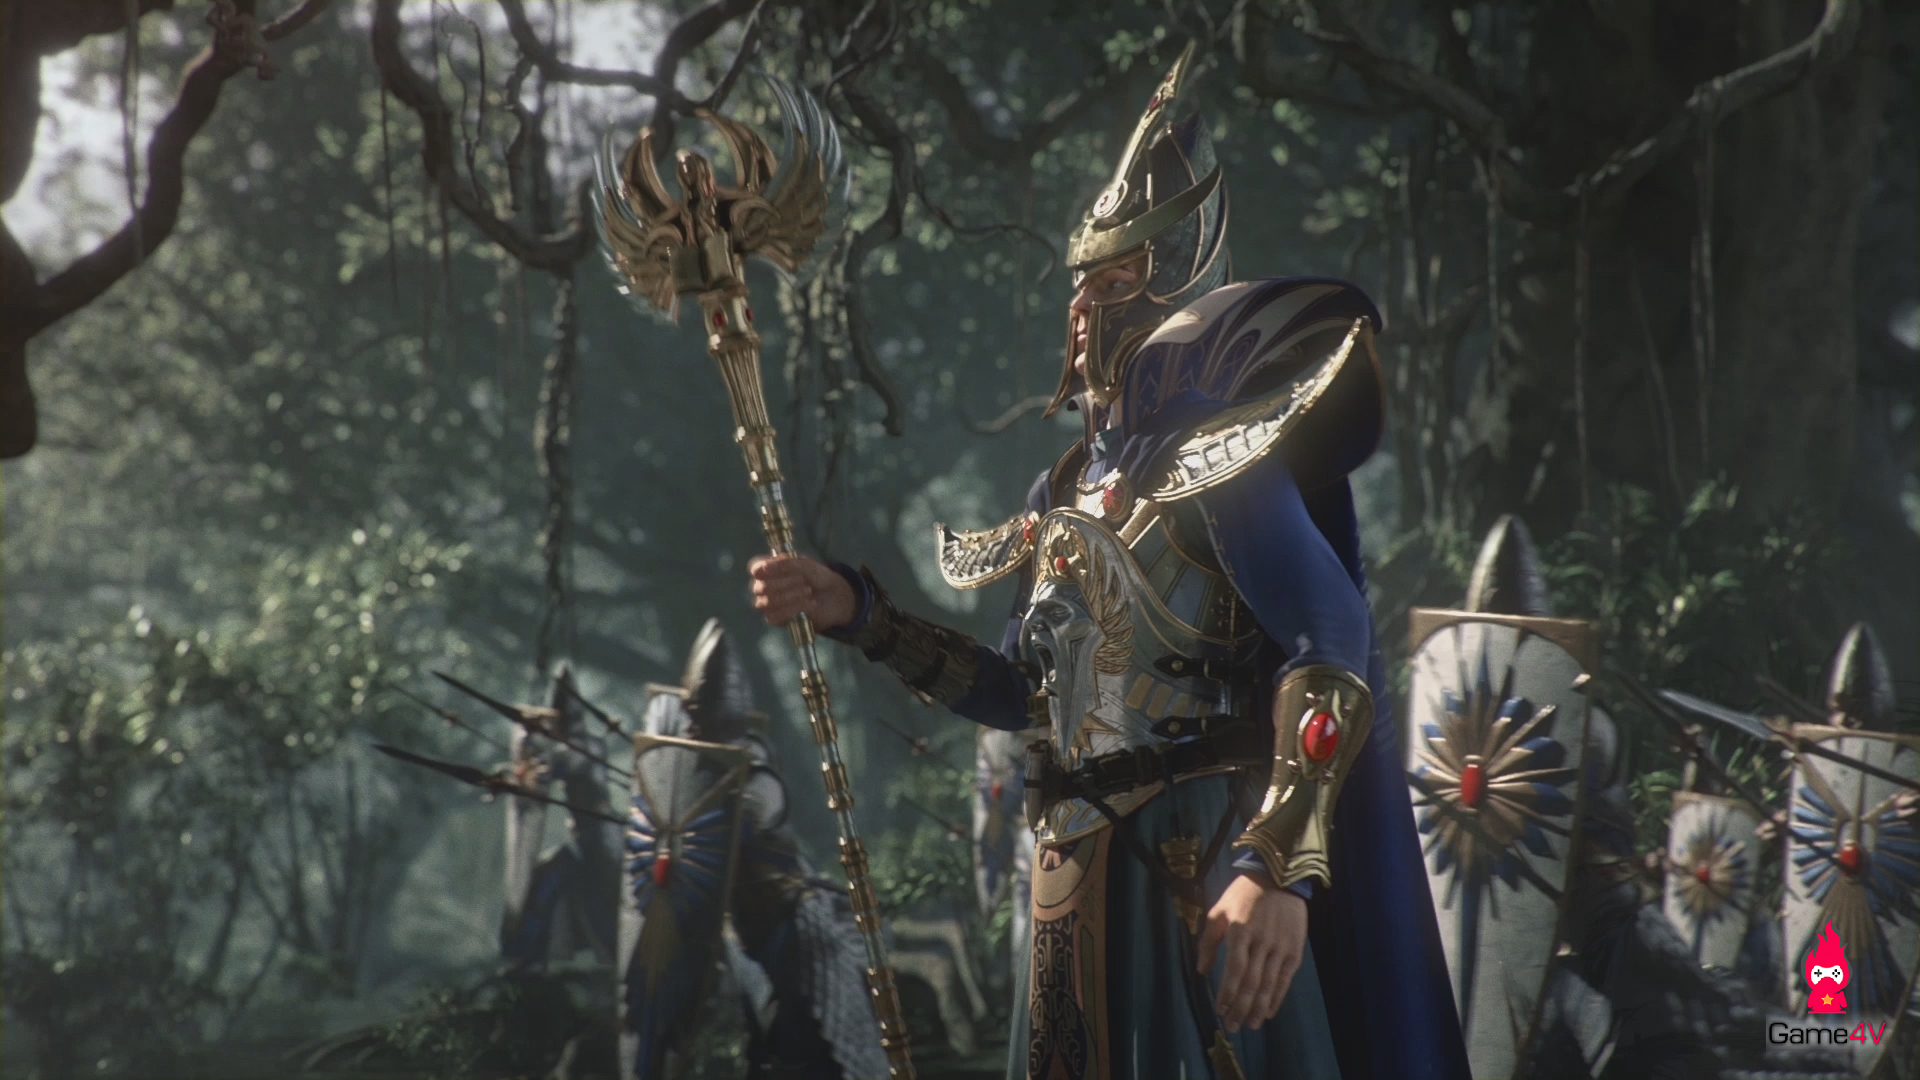 High Elves, Dark Elves, Người thằn lằn và các chủng tộc trong thế giới Total war: Warhammer II